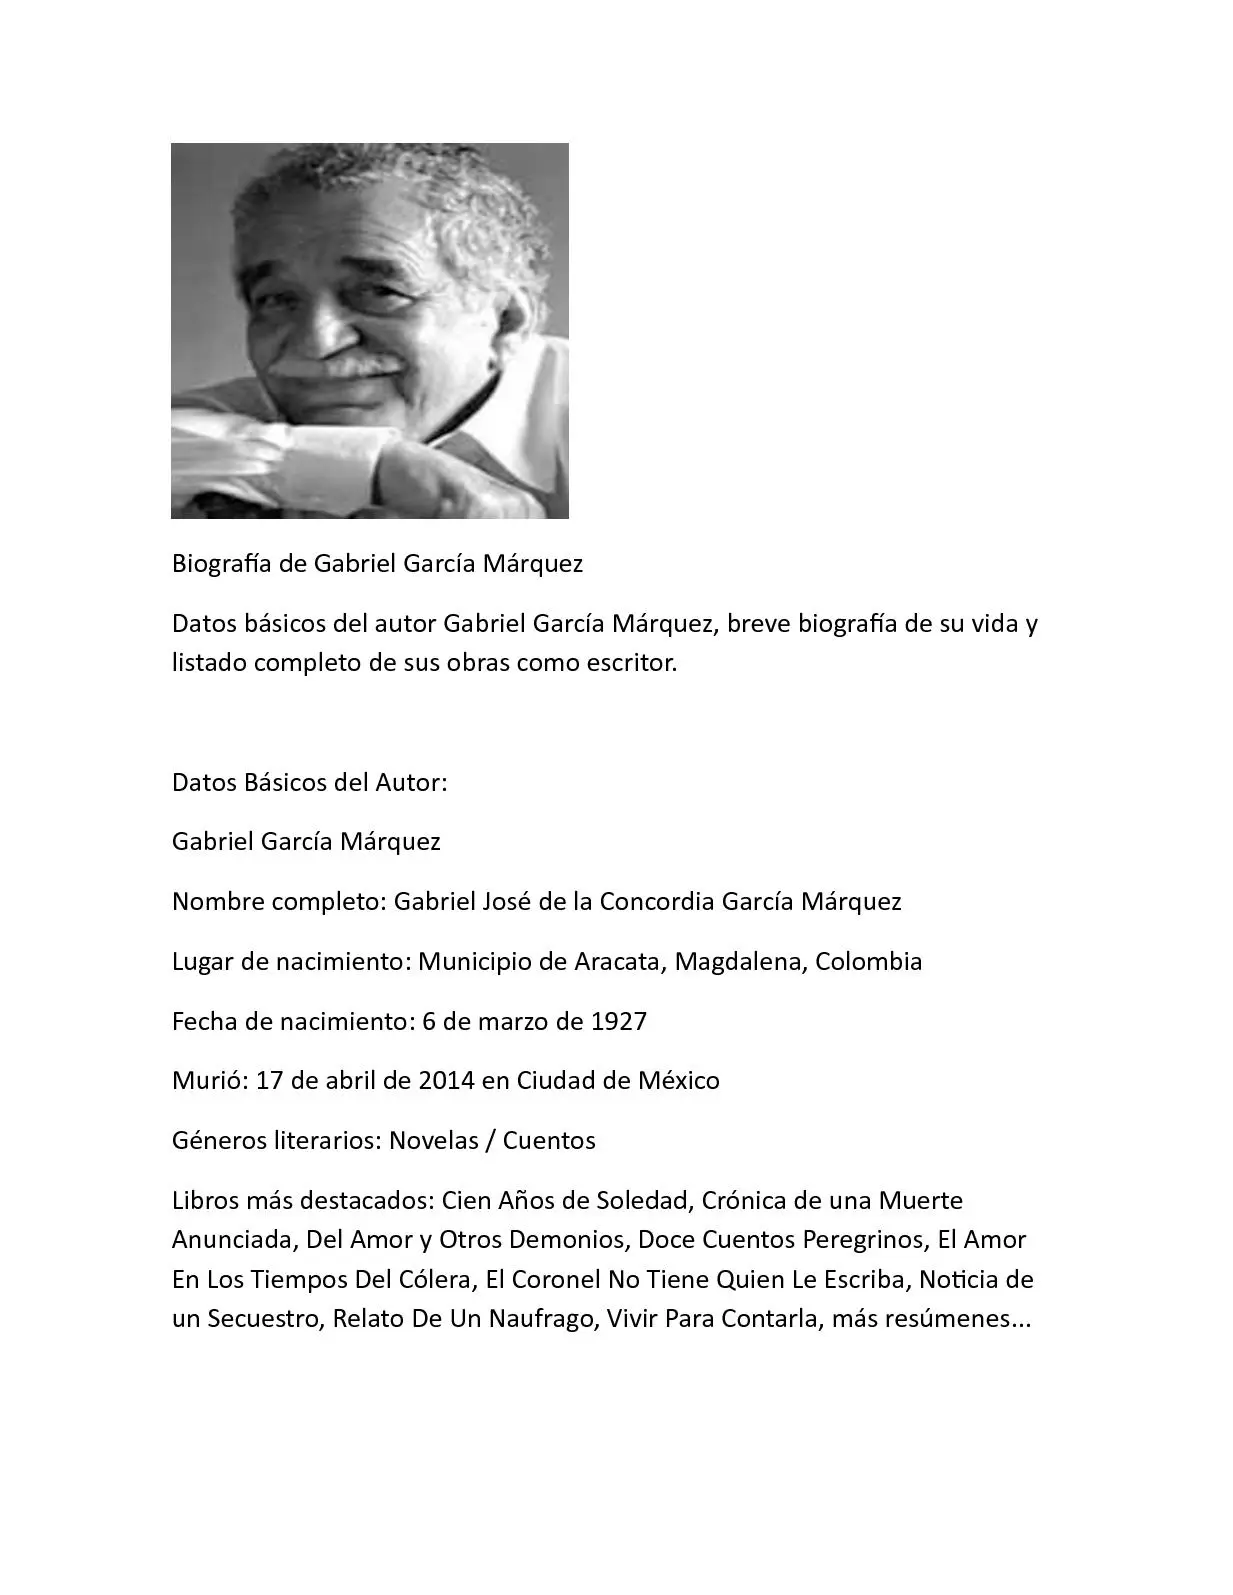 garcia marquez biografia resumen - Qué es lo más significativo de Gabriel García Márquez